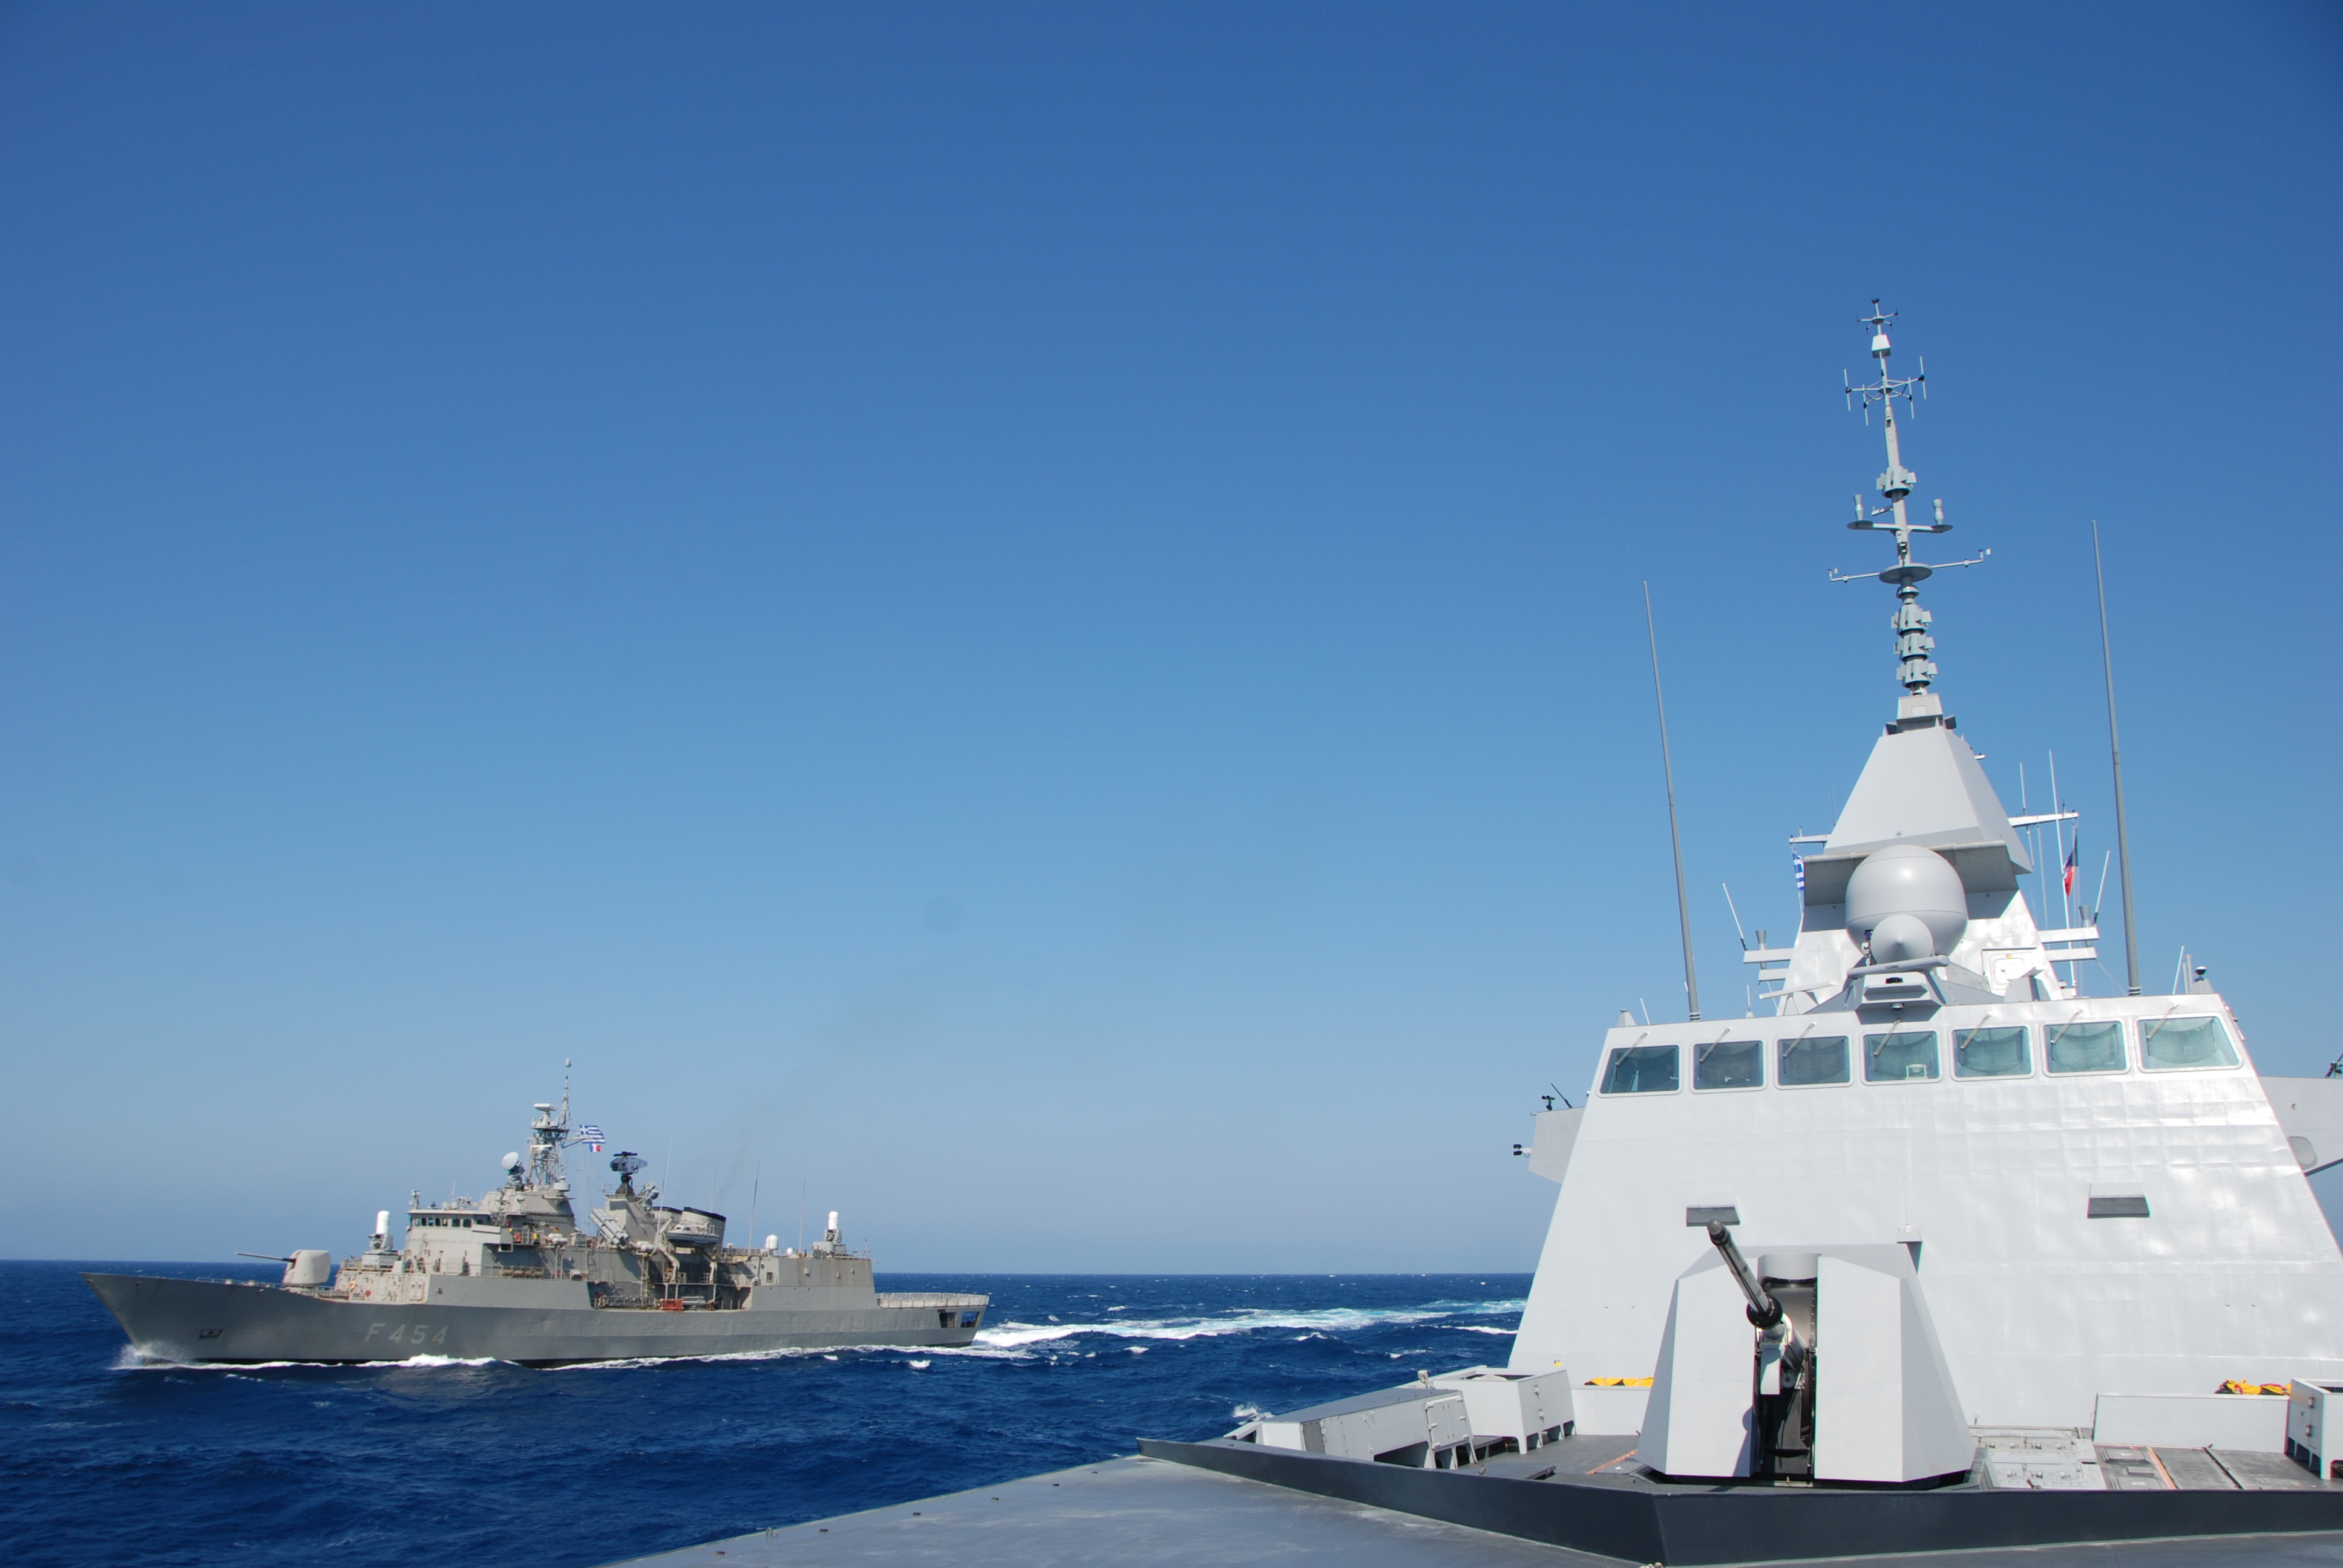  Méditerranée – Exercice de défense aérienne franco-grec pour la FREMM DA Lorraine